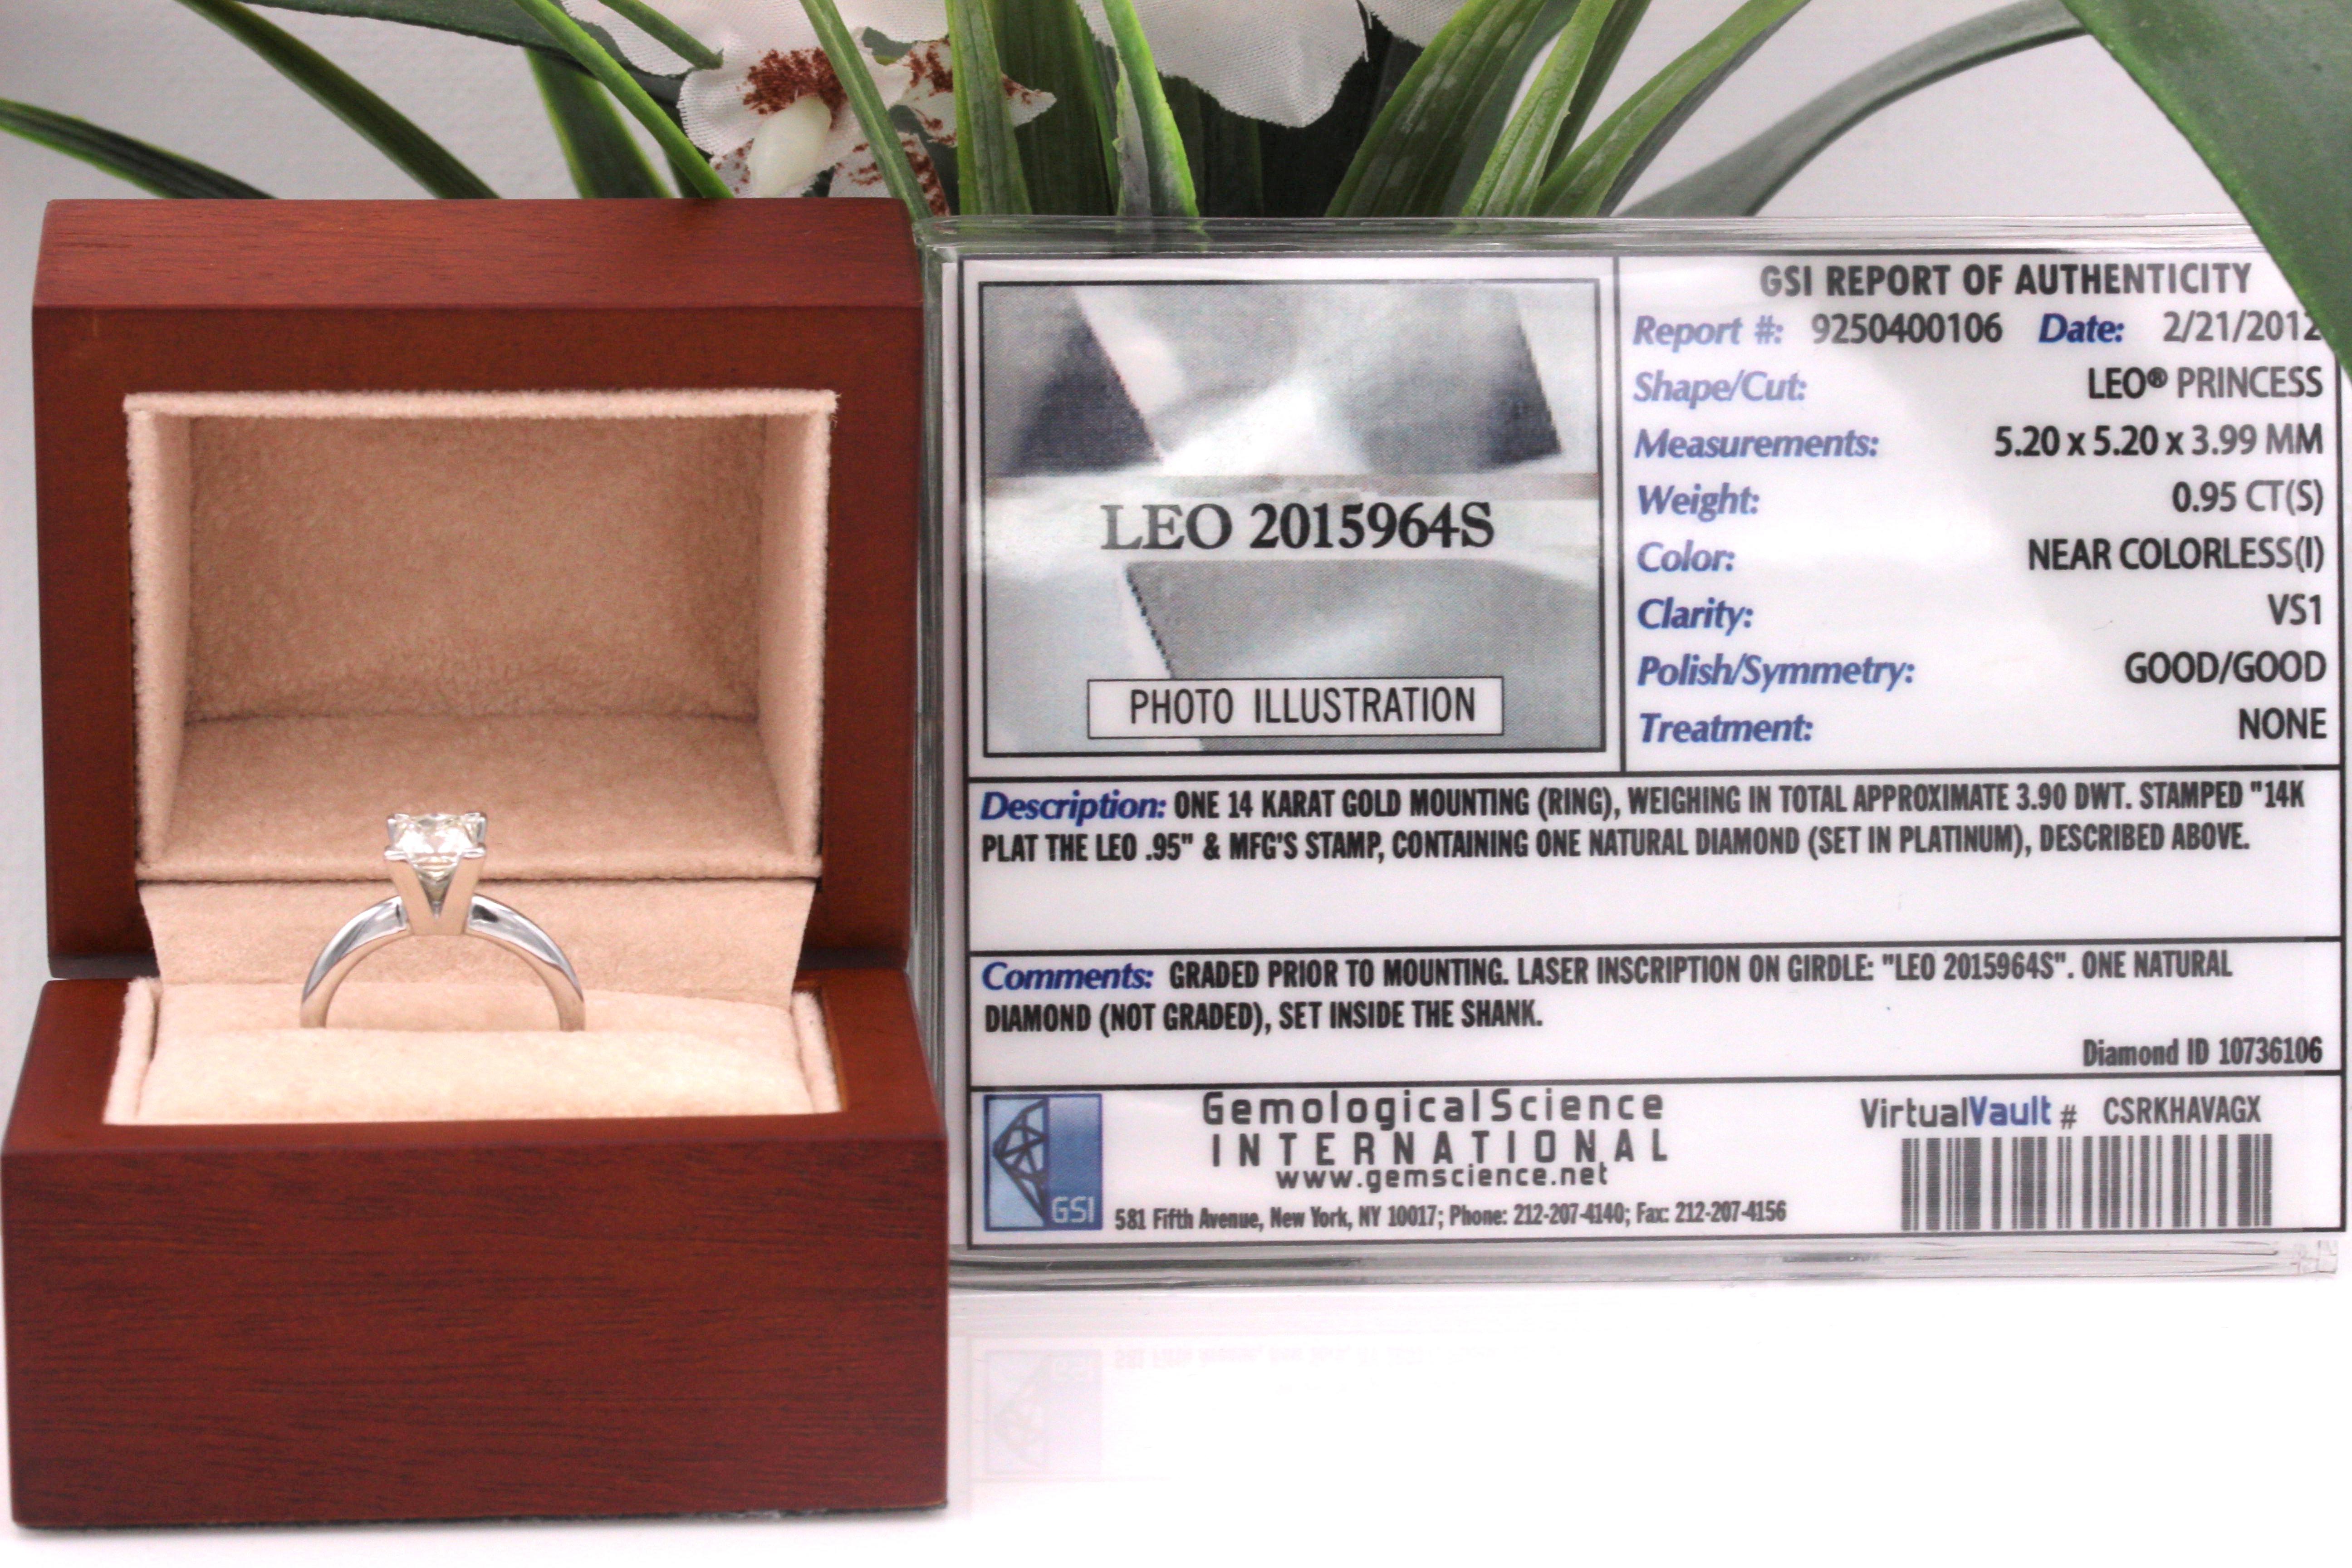 THE LEO DIAMOND von LEO SCHACHTER

Stil:  Solitär-Verlobungsring
Seriennummer:  LEO 2015964S
Metall:  14K Weißgold
Größe:  4 - groß
Karat Gesamtgewicht:  0.95 CTS
Diamant-Form:  Löwe Prinzessin
Farbe und Reinheit des Diamanten:  I / VS1
Wahrzeichen: